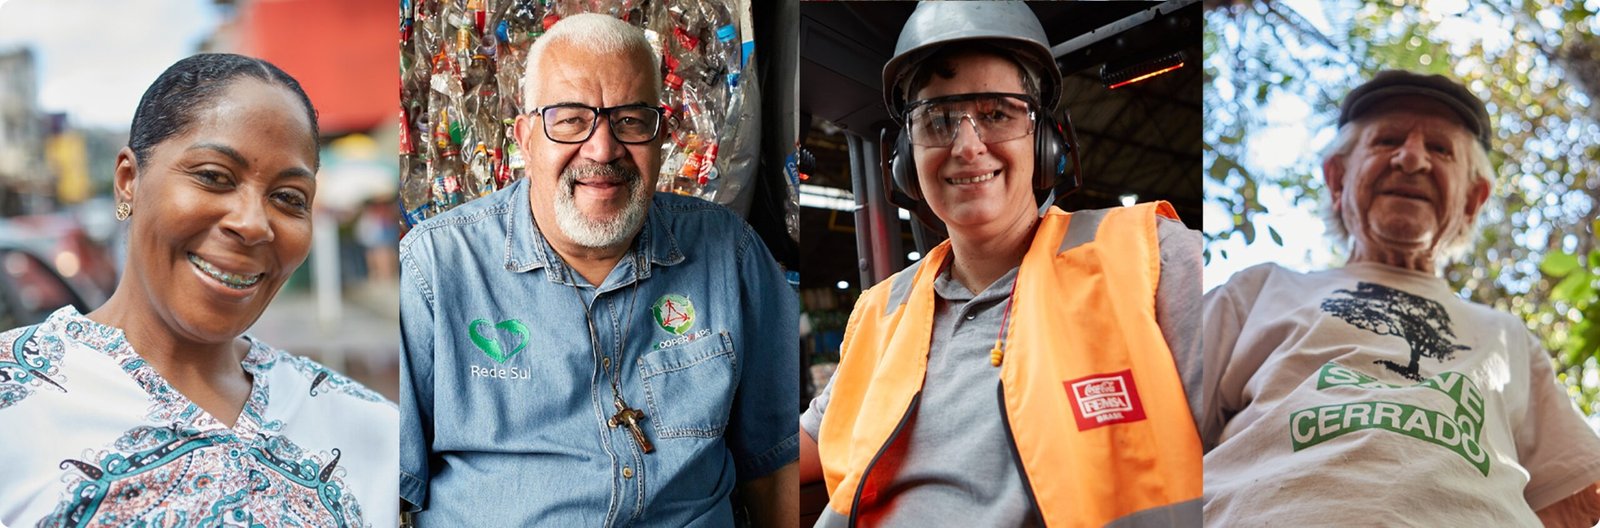 Coca-Cola Brasil inaugura a exposição audiovisual “Histórias de quem faz a diferença – Retratos que inspiram o Brasil”